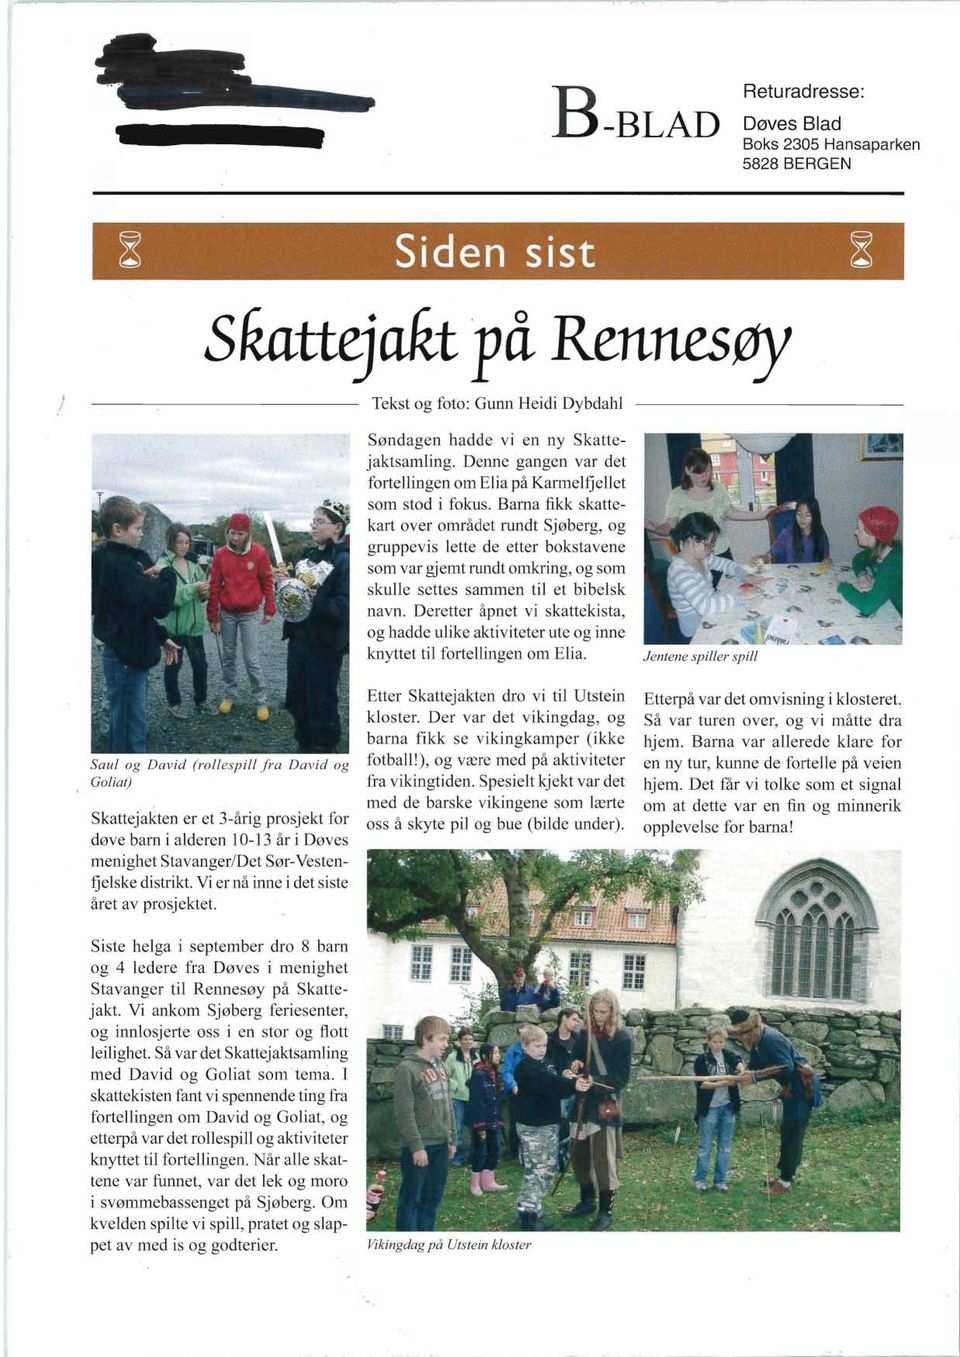 distrikt. Vi er nå inne i det siste året av prosjektet. Siste helga i september dro 8 barn og 4 ledere fra Døves i menighet Stavanger til Rennesøy på Skattejakt.